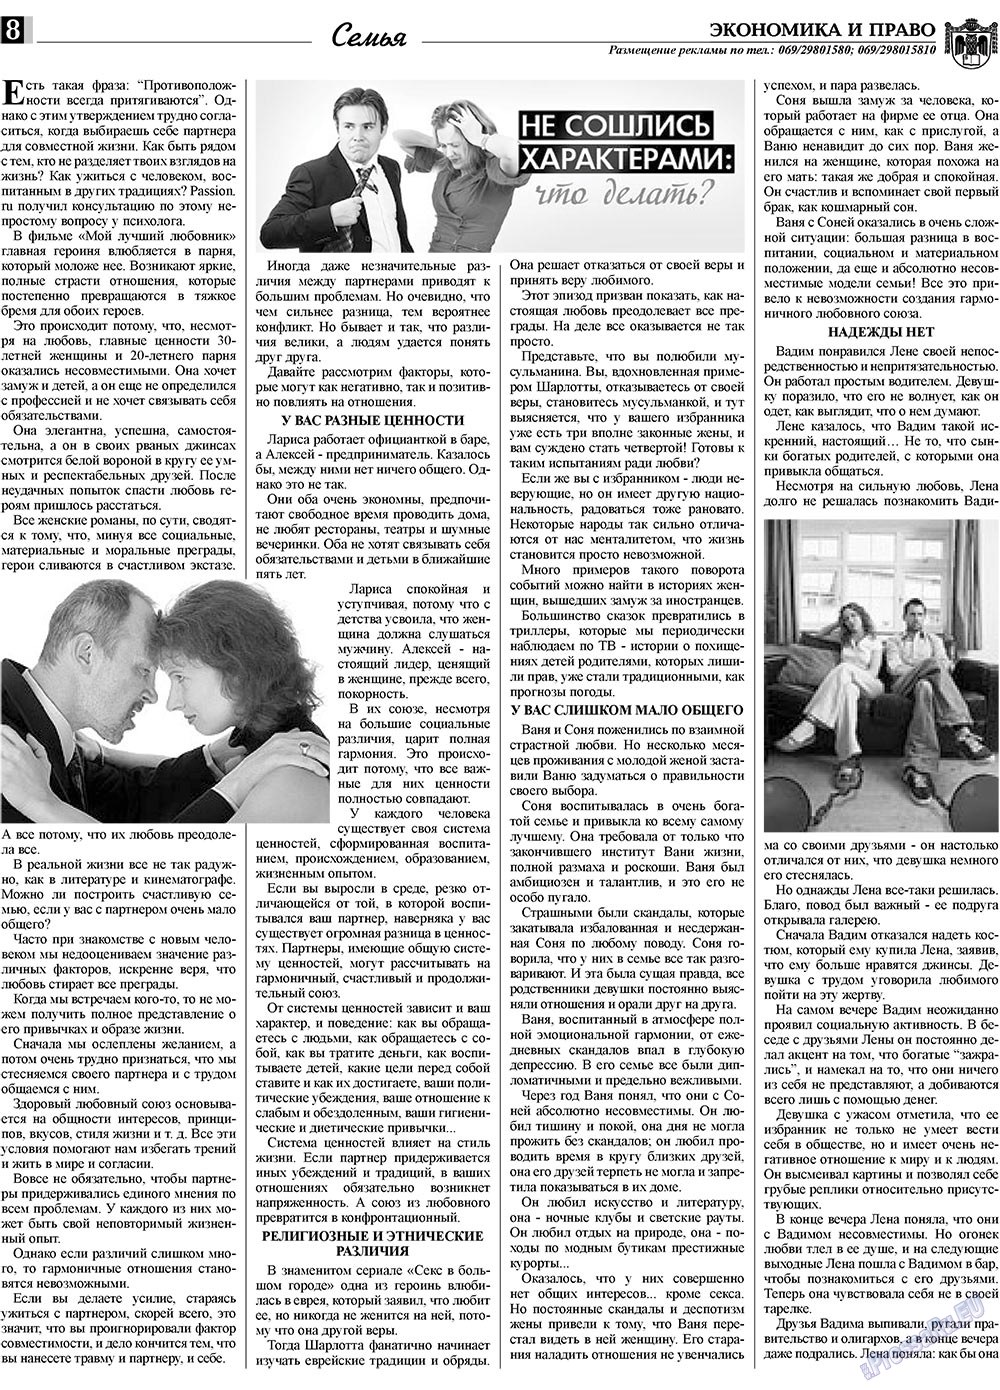 Экономика и право, газета. 2010 №3 стр.8